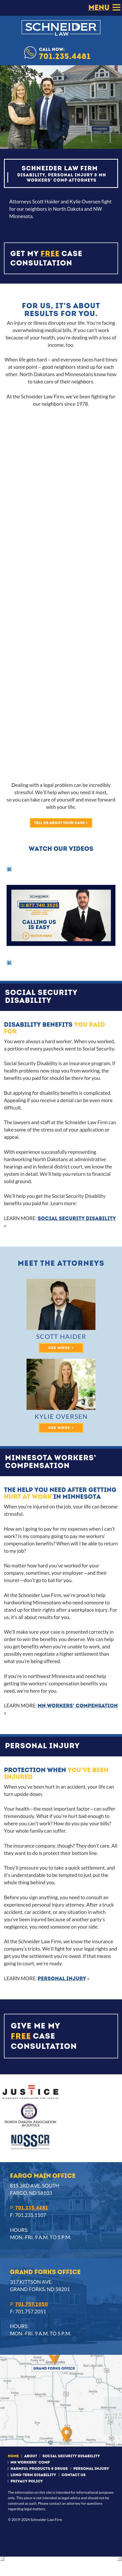 Schneider, Schneider & Schneider - Fargo ND Lawyers